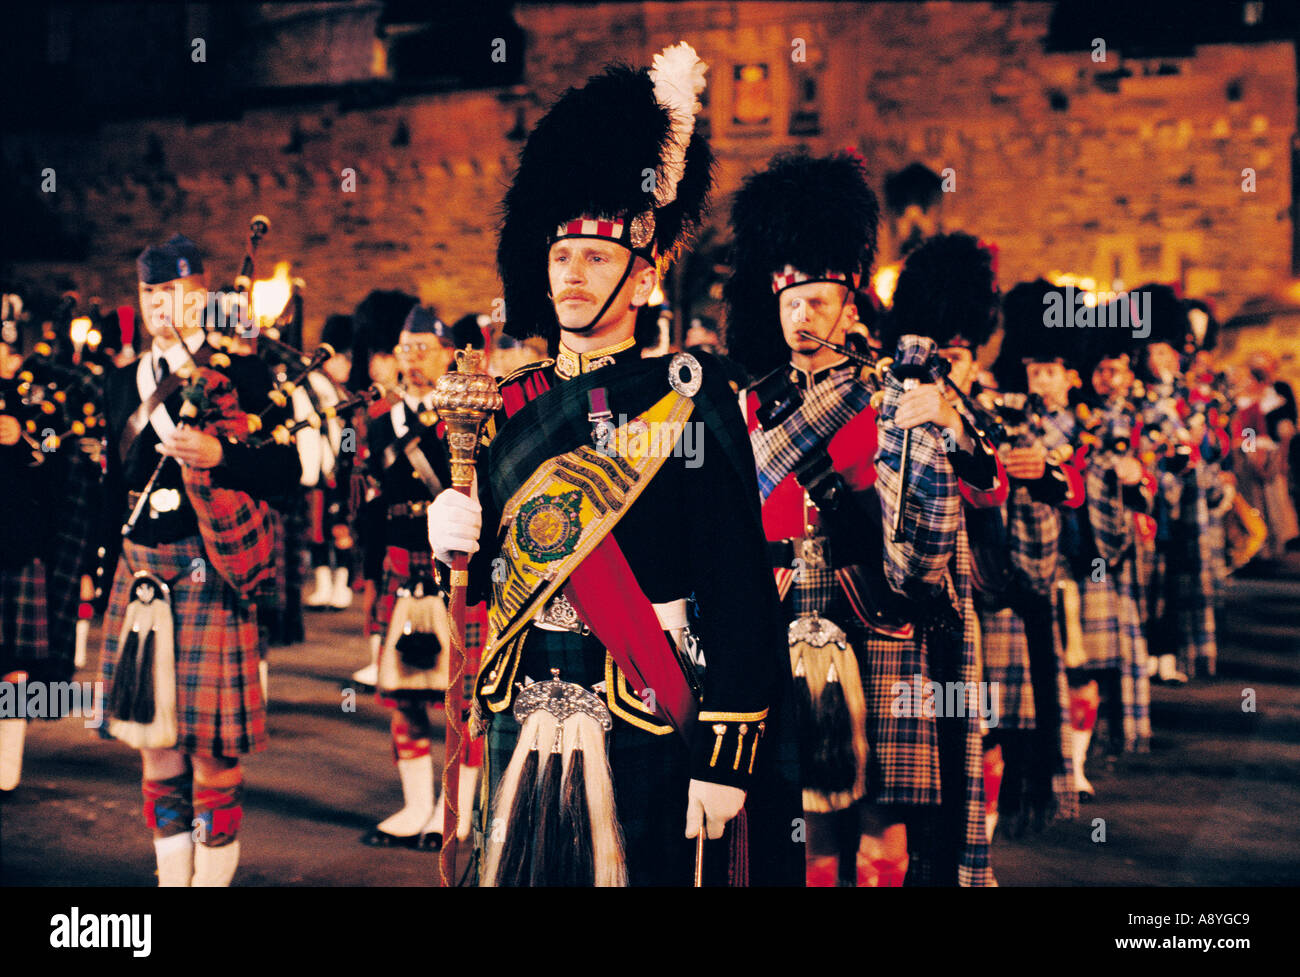 Edinburgh Tattoo militare. Scottish pipe band pipers sulla spianata di fronte al Castello di Edimburgo, Scozia, Regno Unito Foto Stock